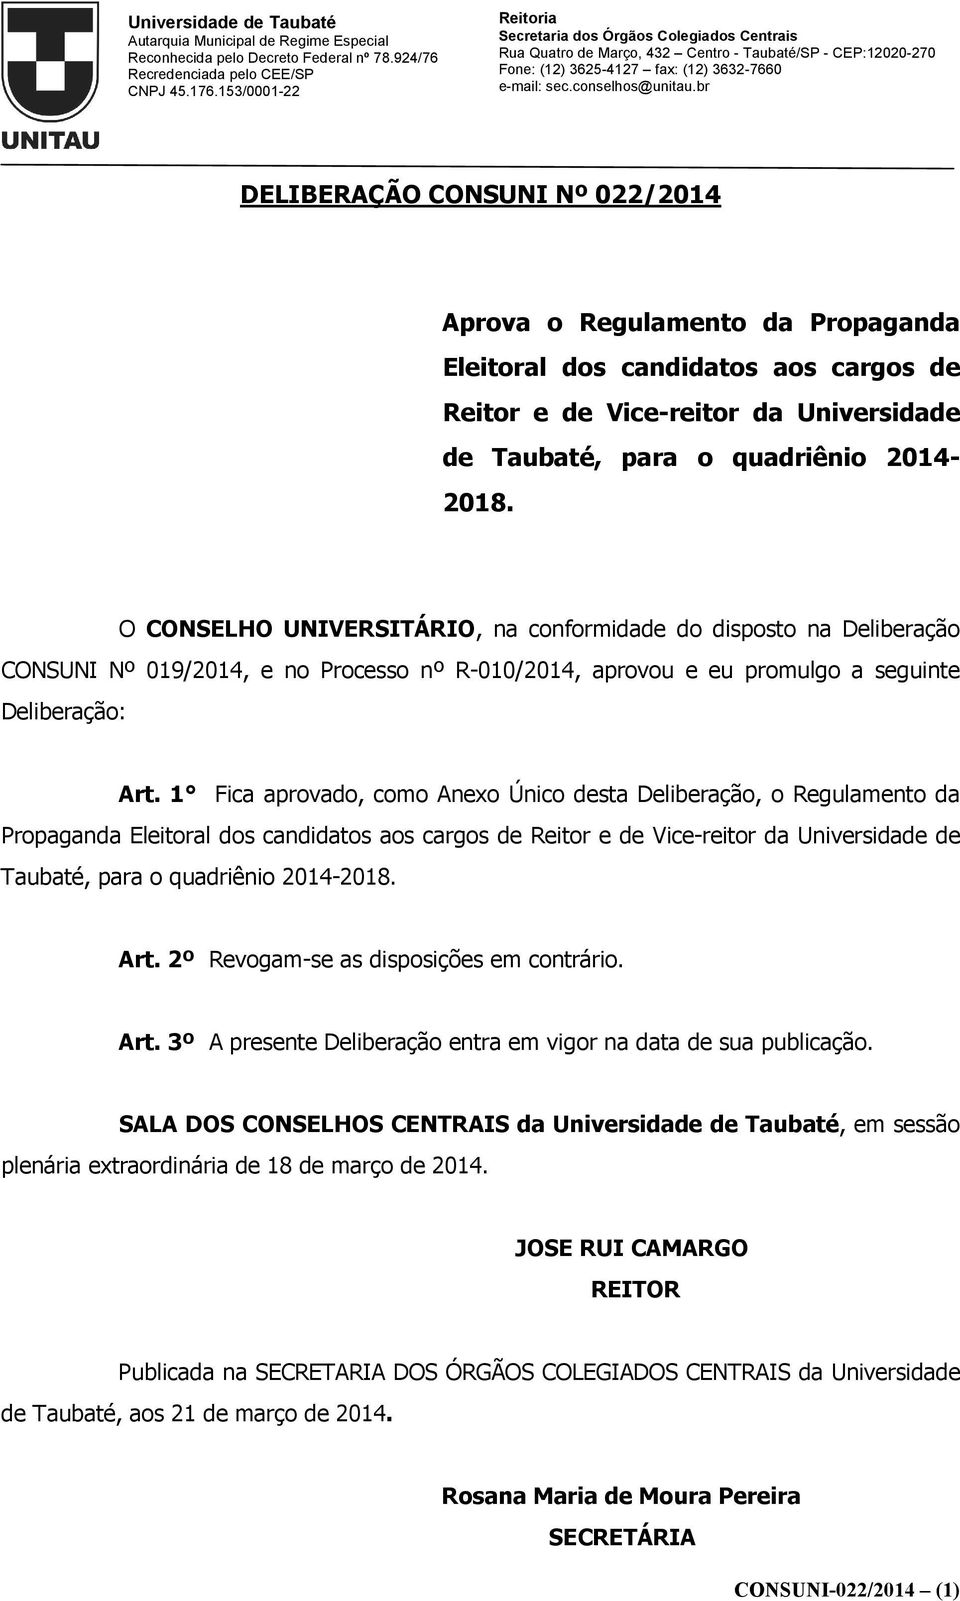 1 Fica aprovado, como Anexo Único desta Deliberação, o Regulamento da Propaganda Eleitoral dos candidatos aos cargos de Reitor e de Vice-reitor da Universidade de Taubaté, para o quadriênio 2014-2018.